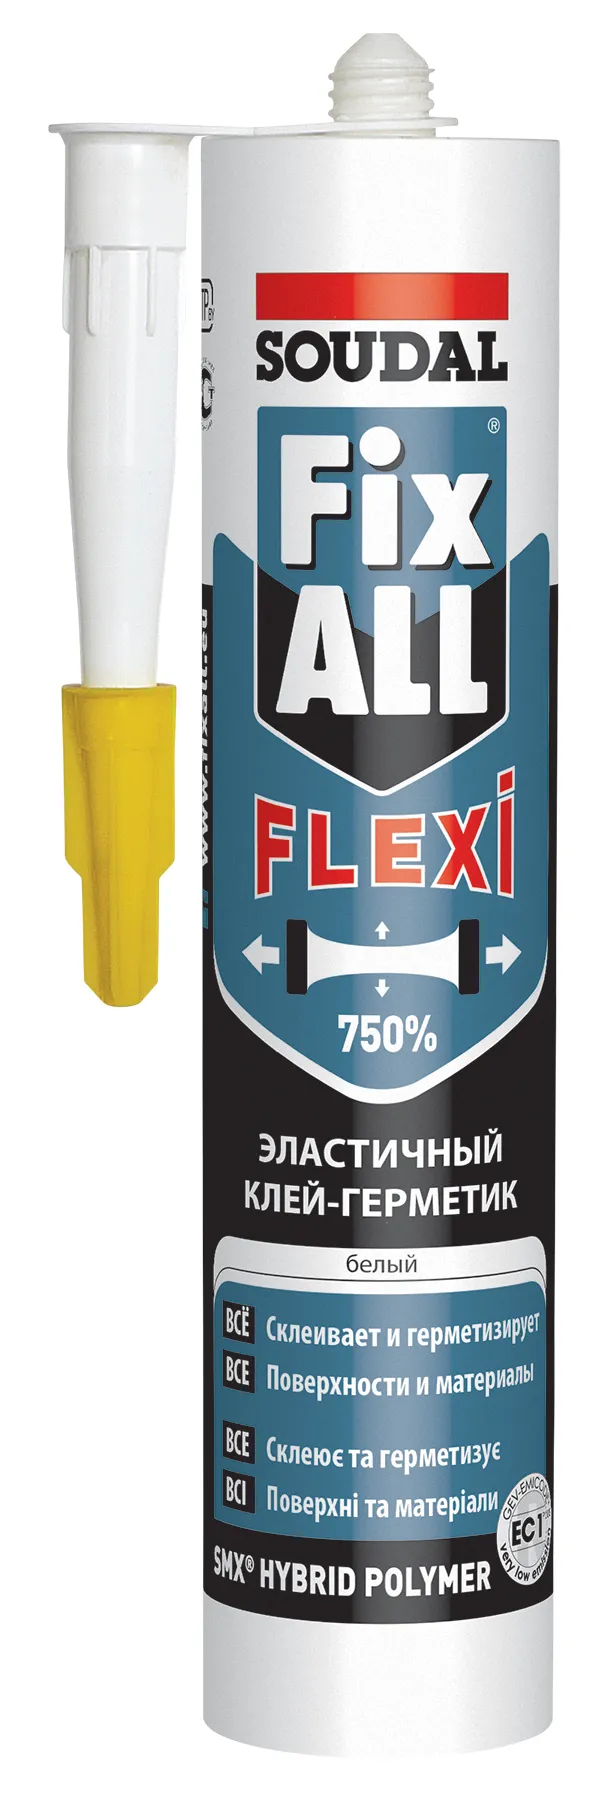 Клей-герметик Soudal Fix All Flexi